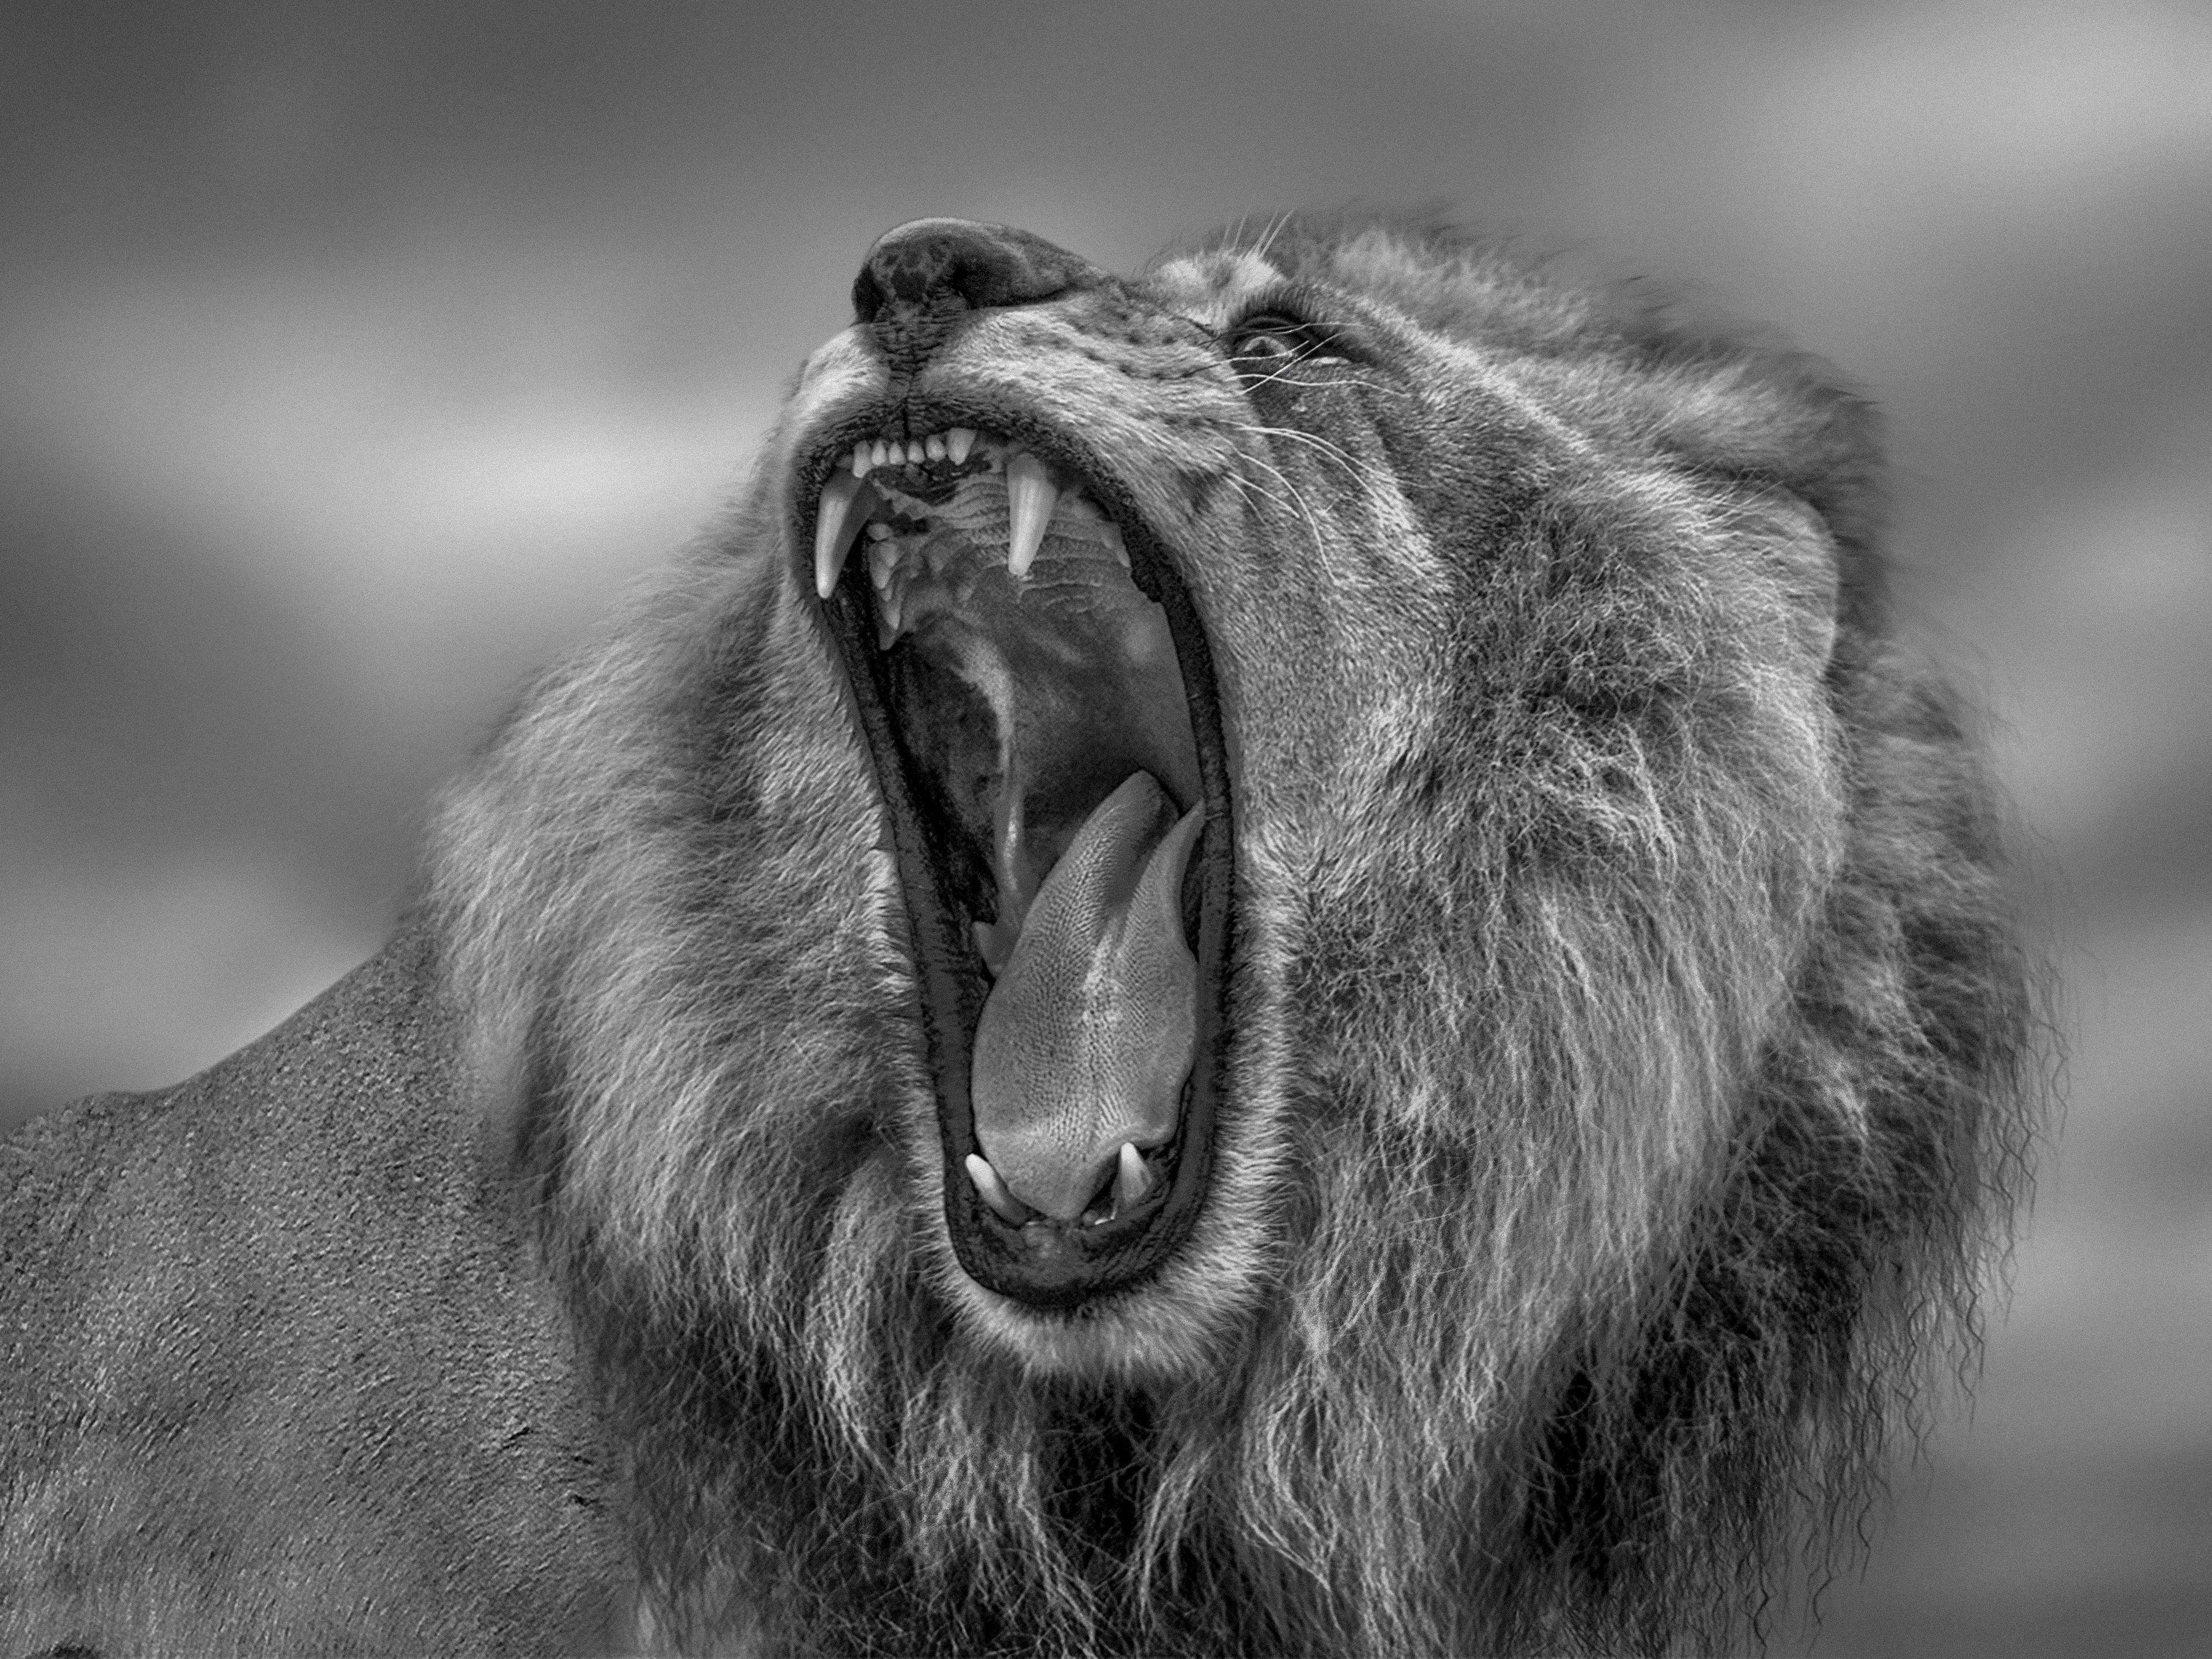 Black and White Photograph Shane Russeck - « Roar » - Photographie de lion noir et blanc 40x60  Afrique - Photographie de lion